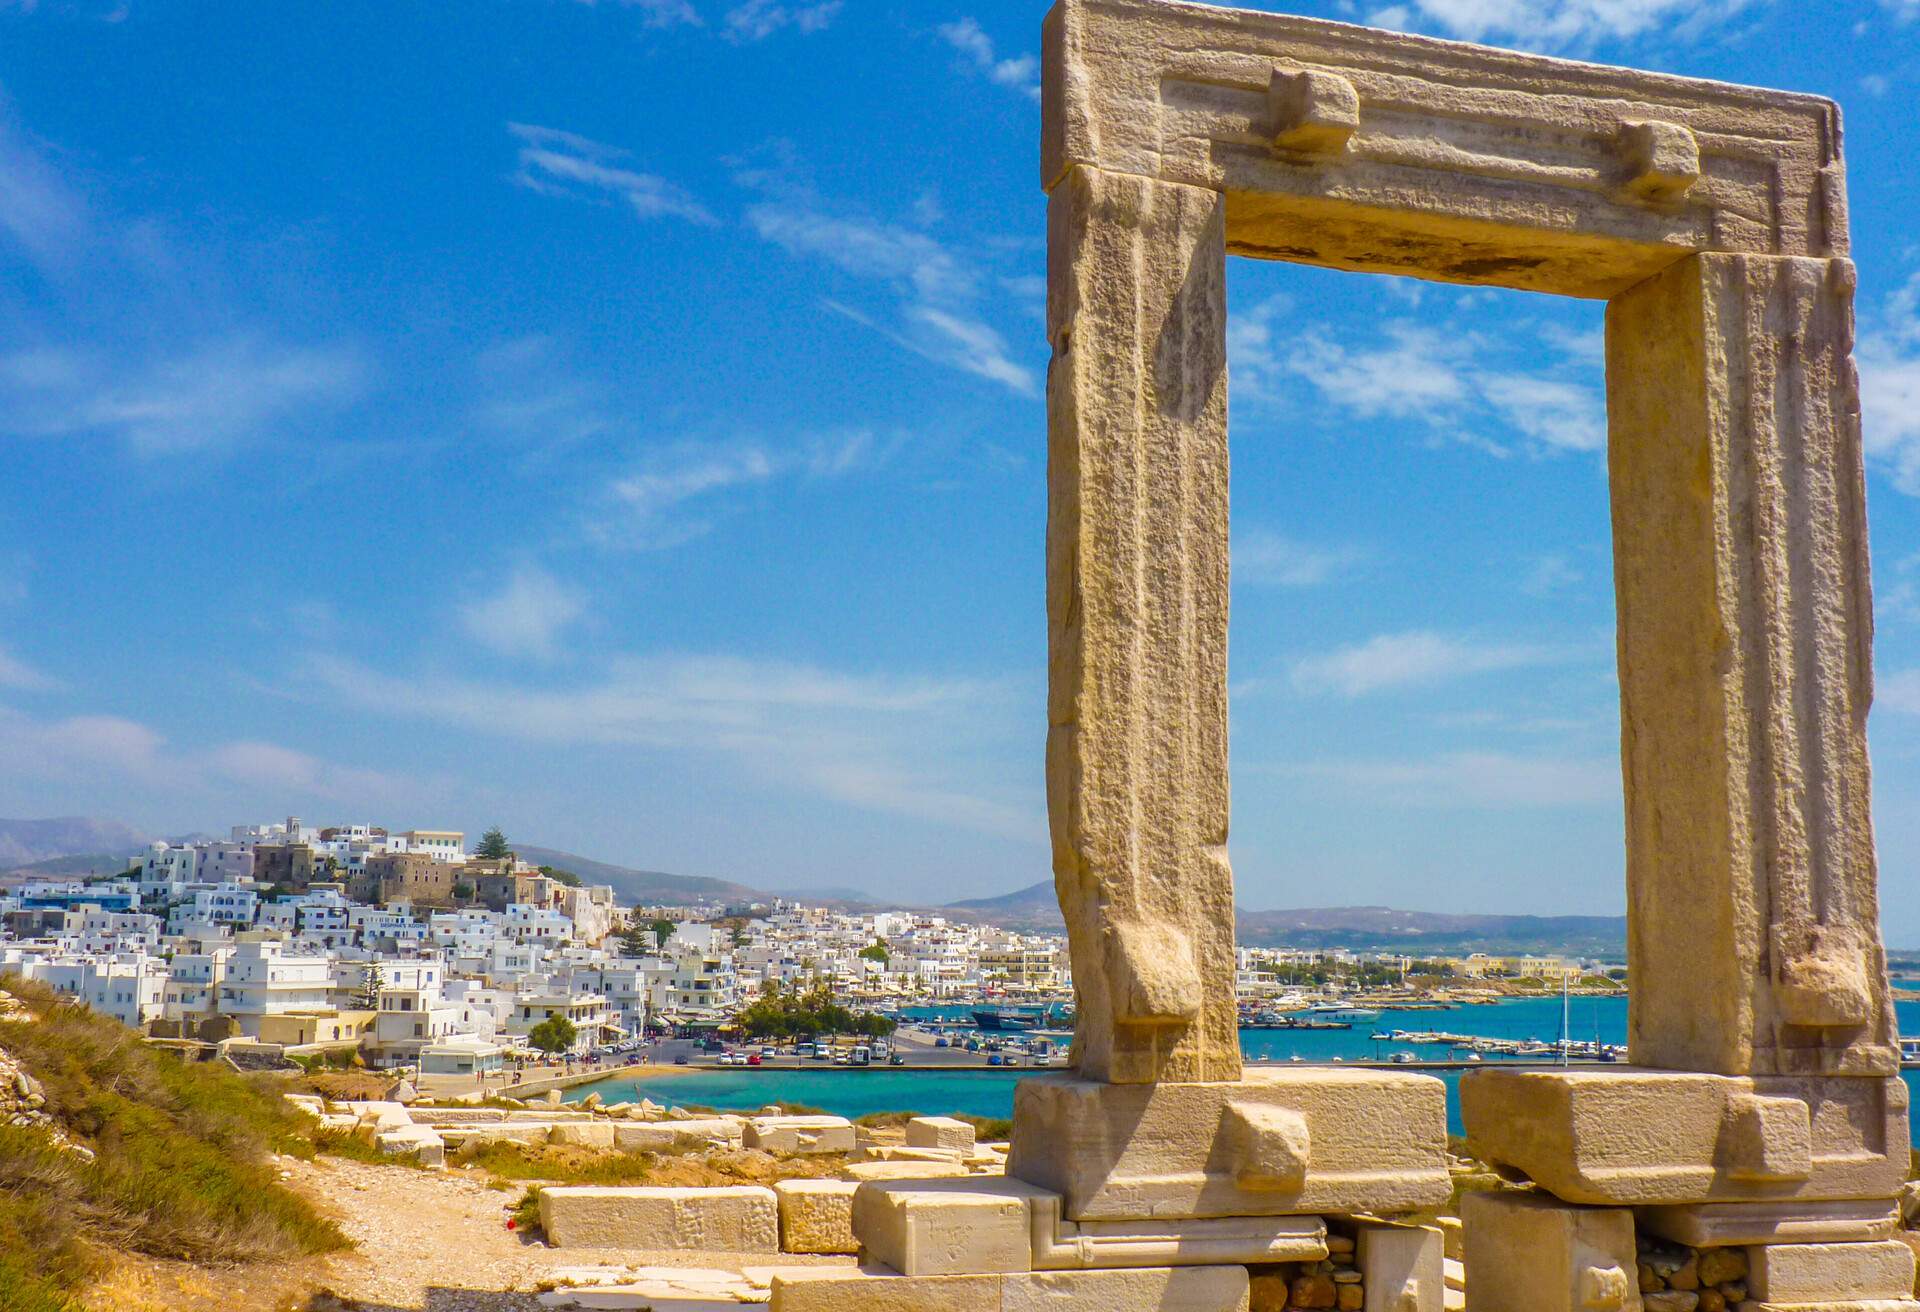 Grecia: las 9 islas griegas menos turísticas | KAYAK